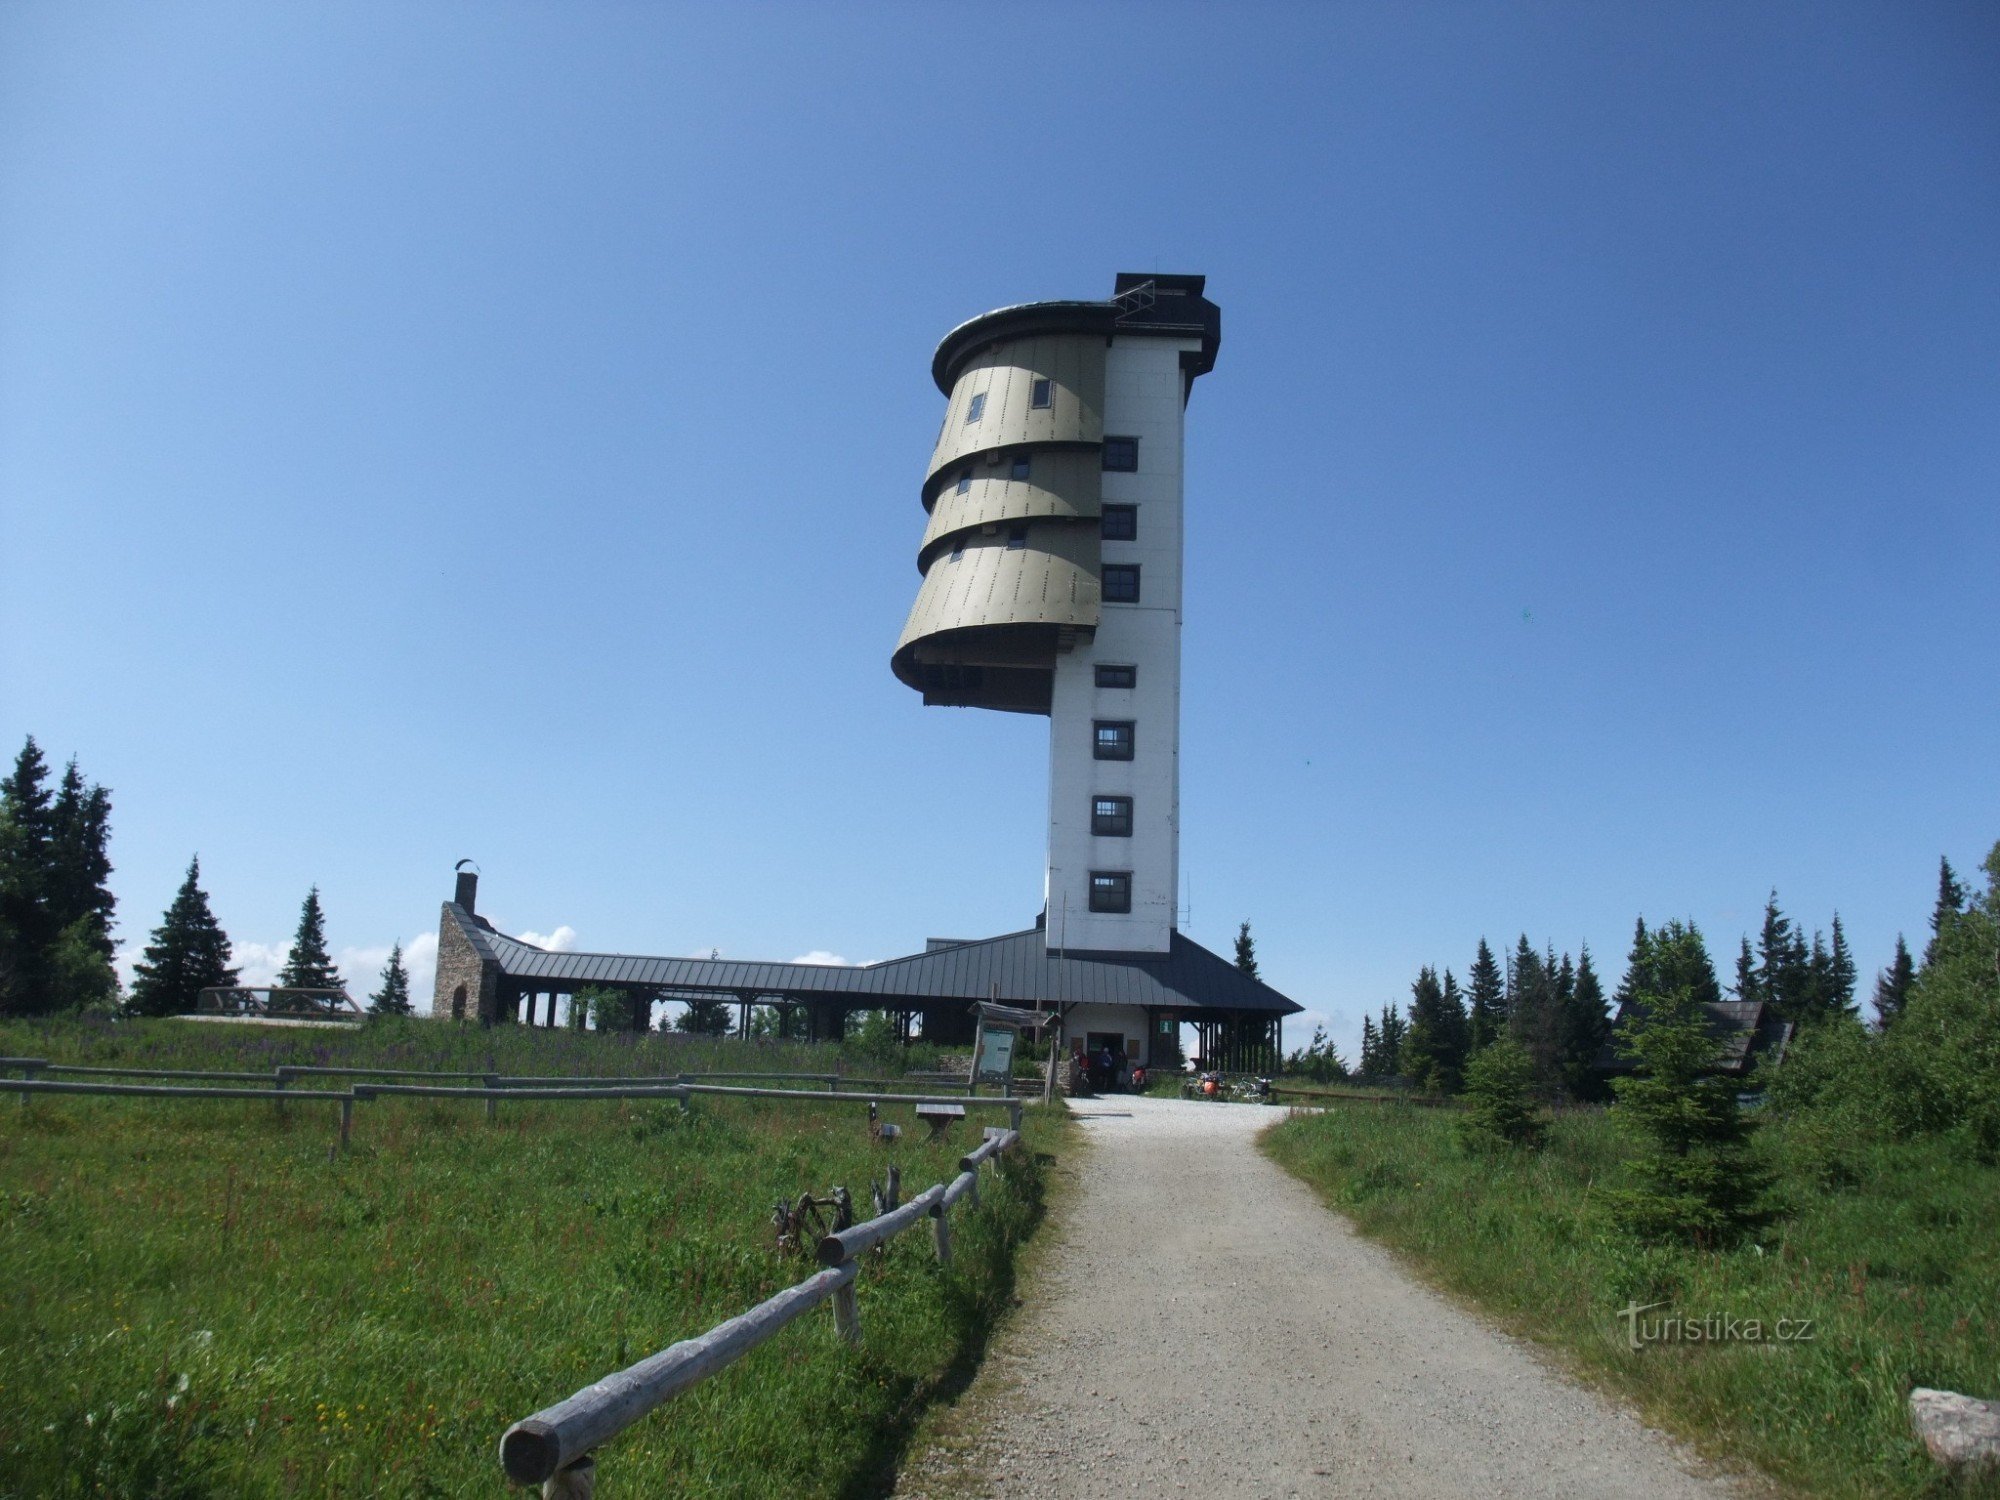 Poledník observationstårn på Polední hora